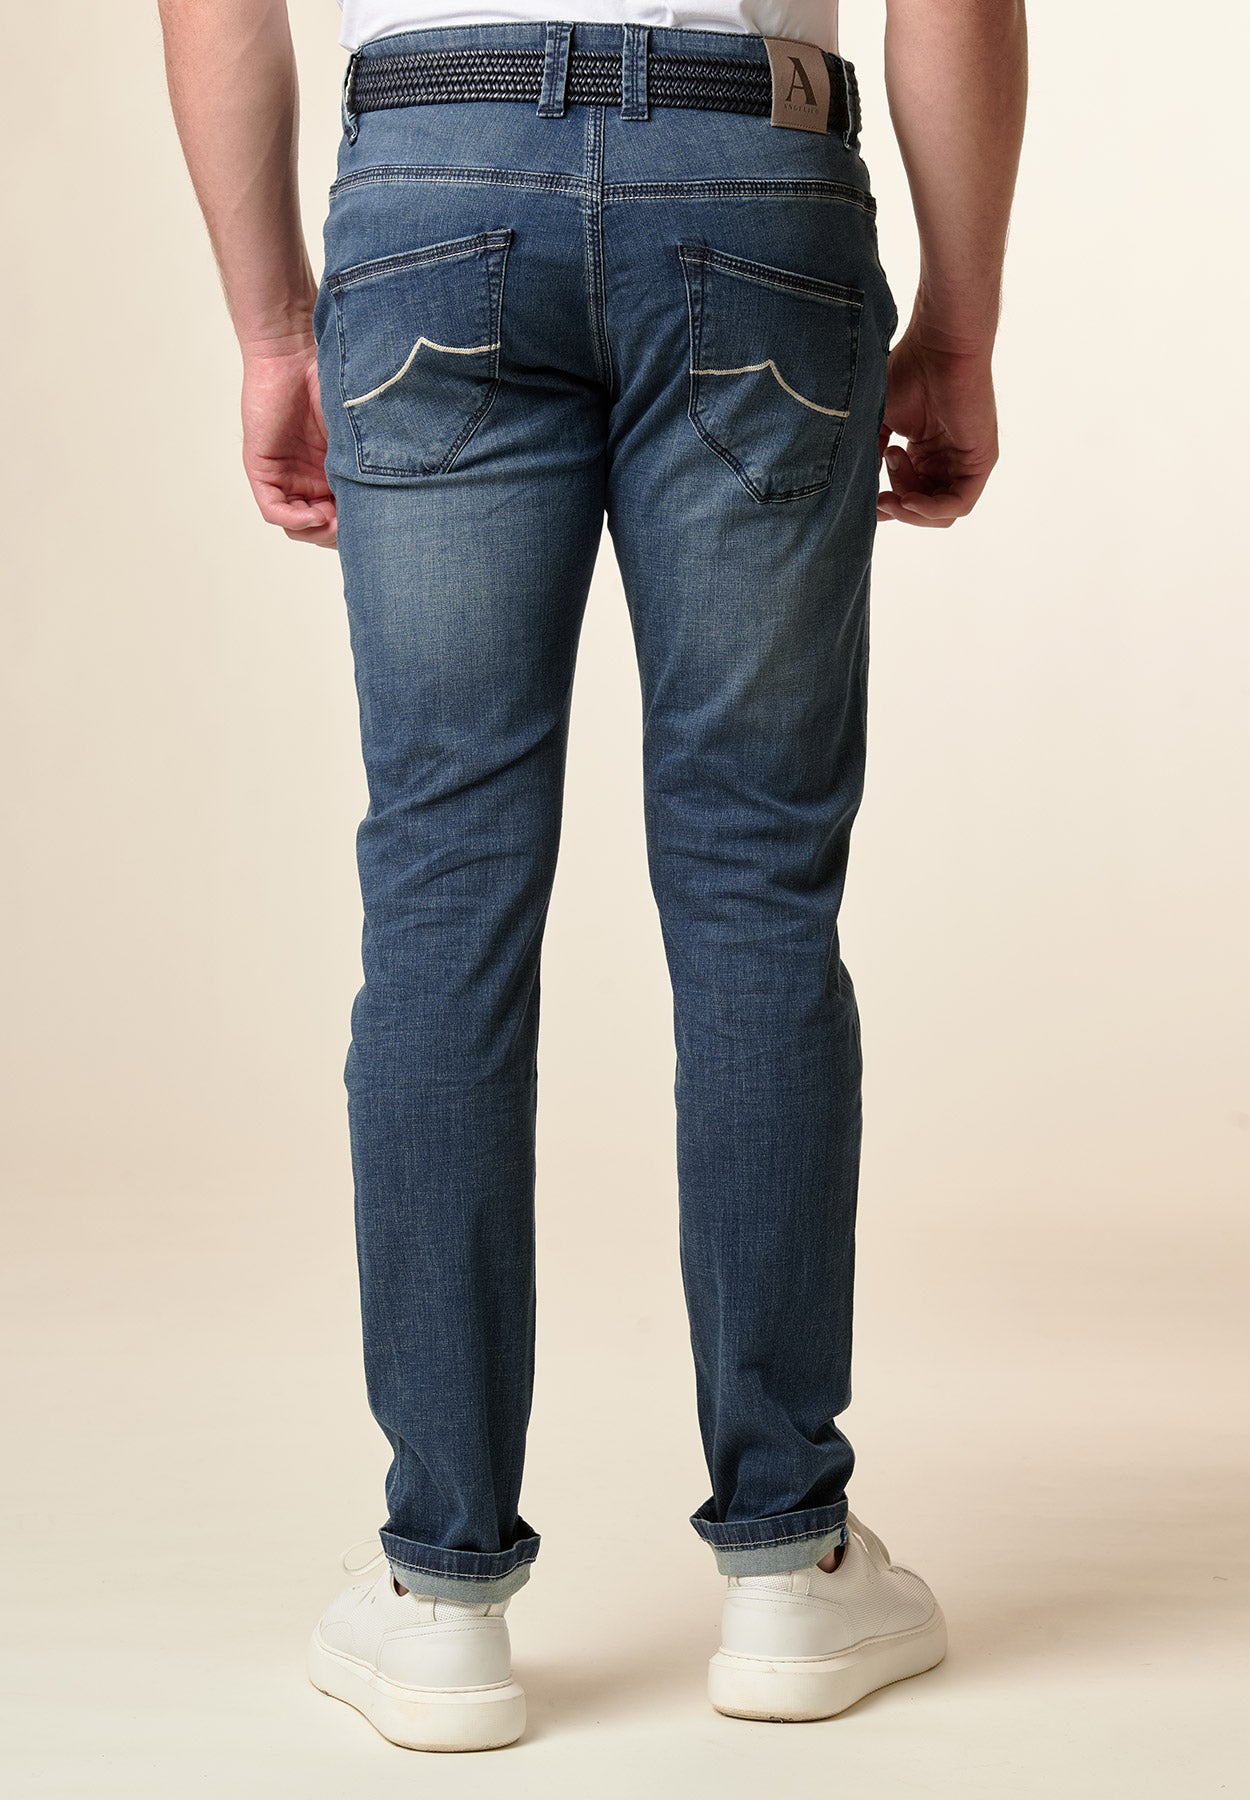 Jeans stretch tasche america custom fit